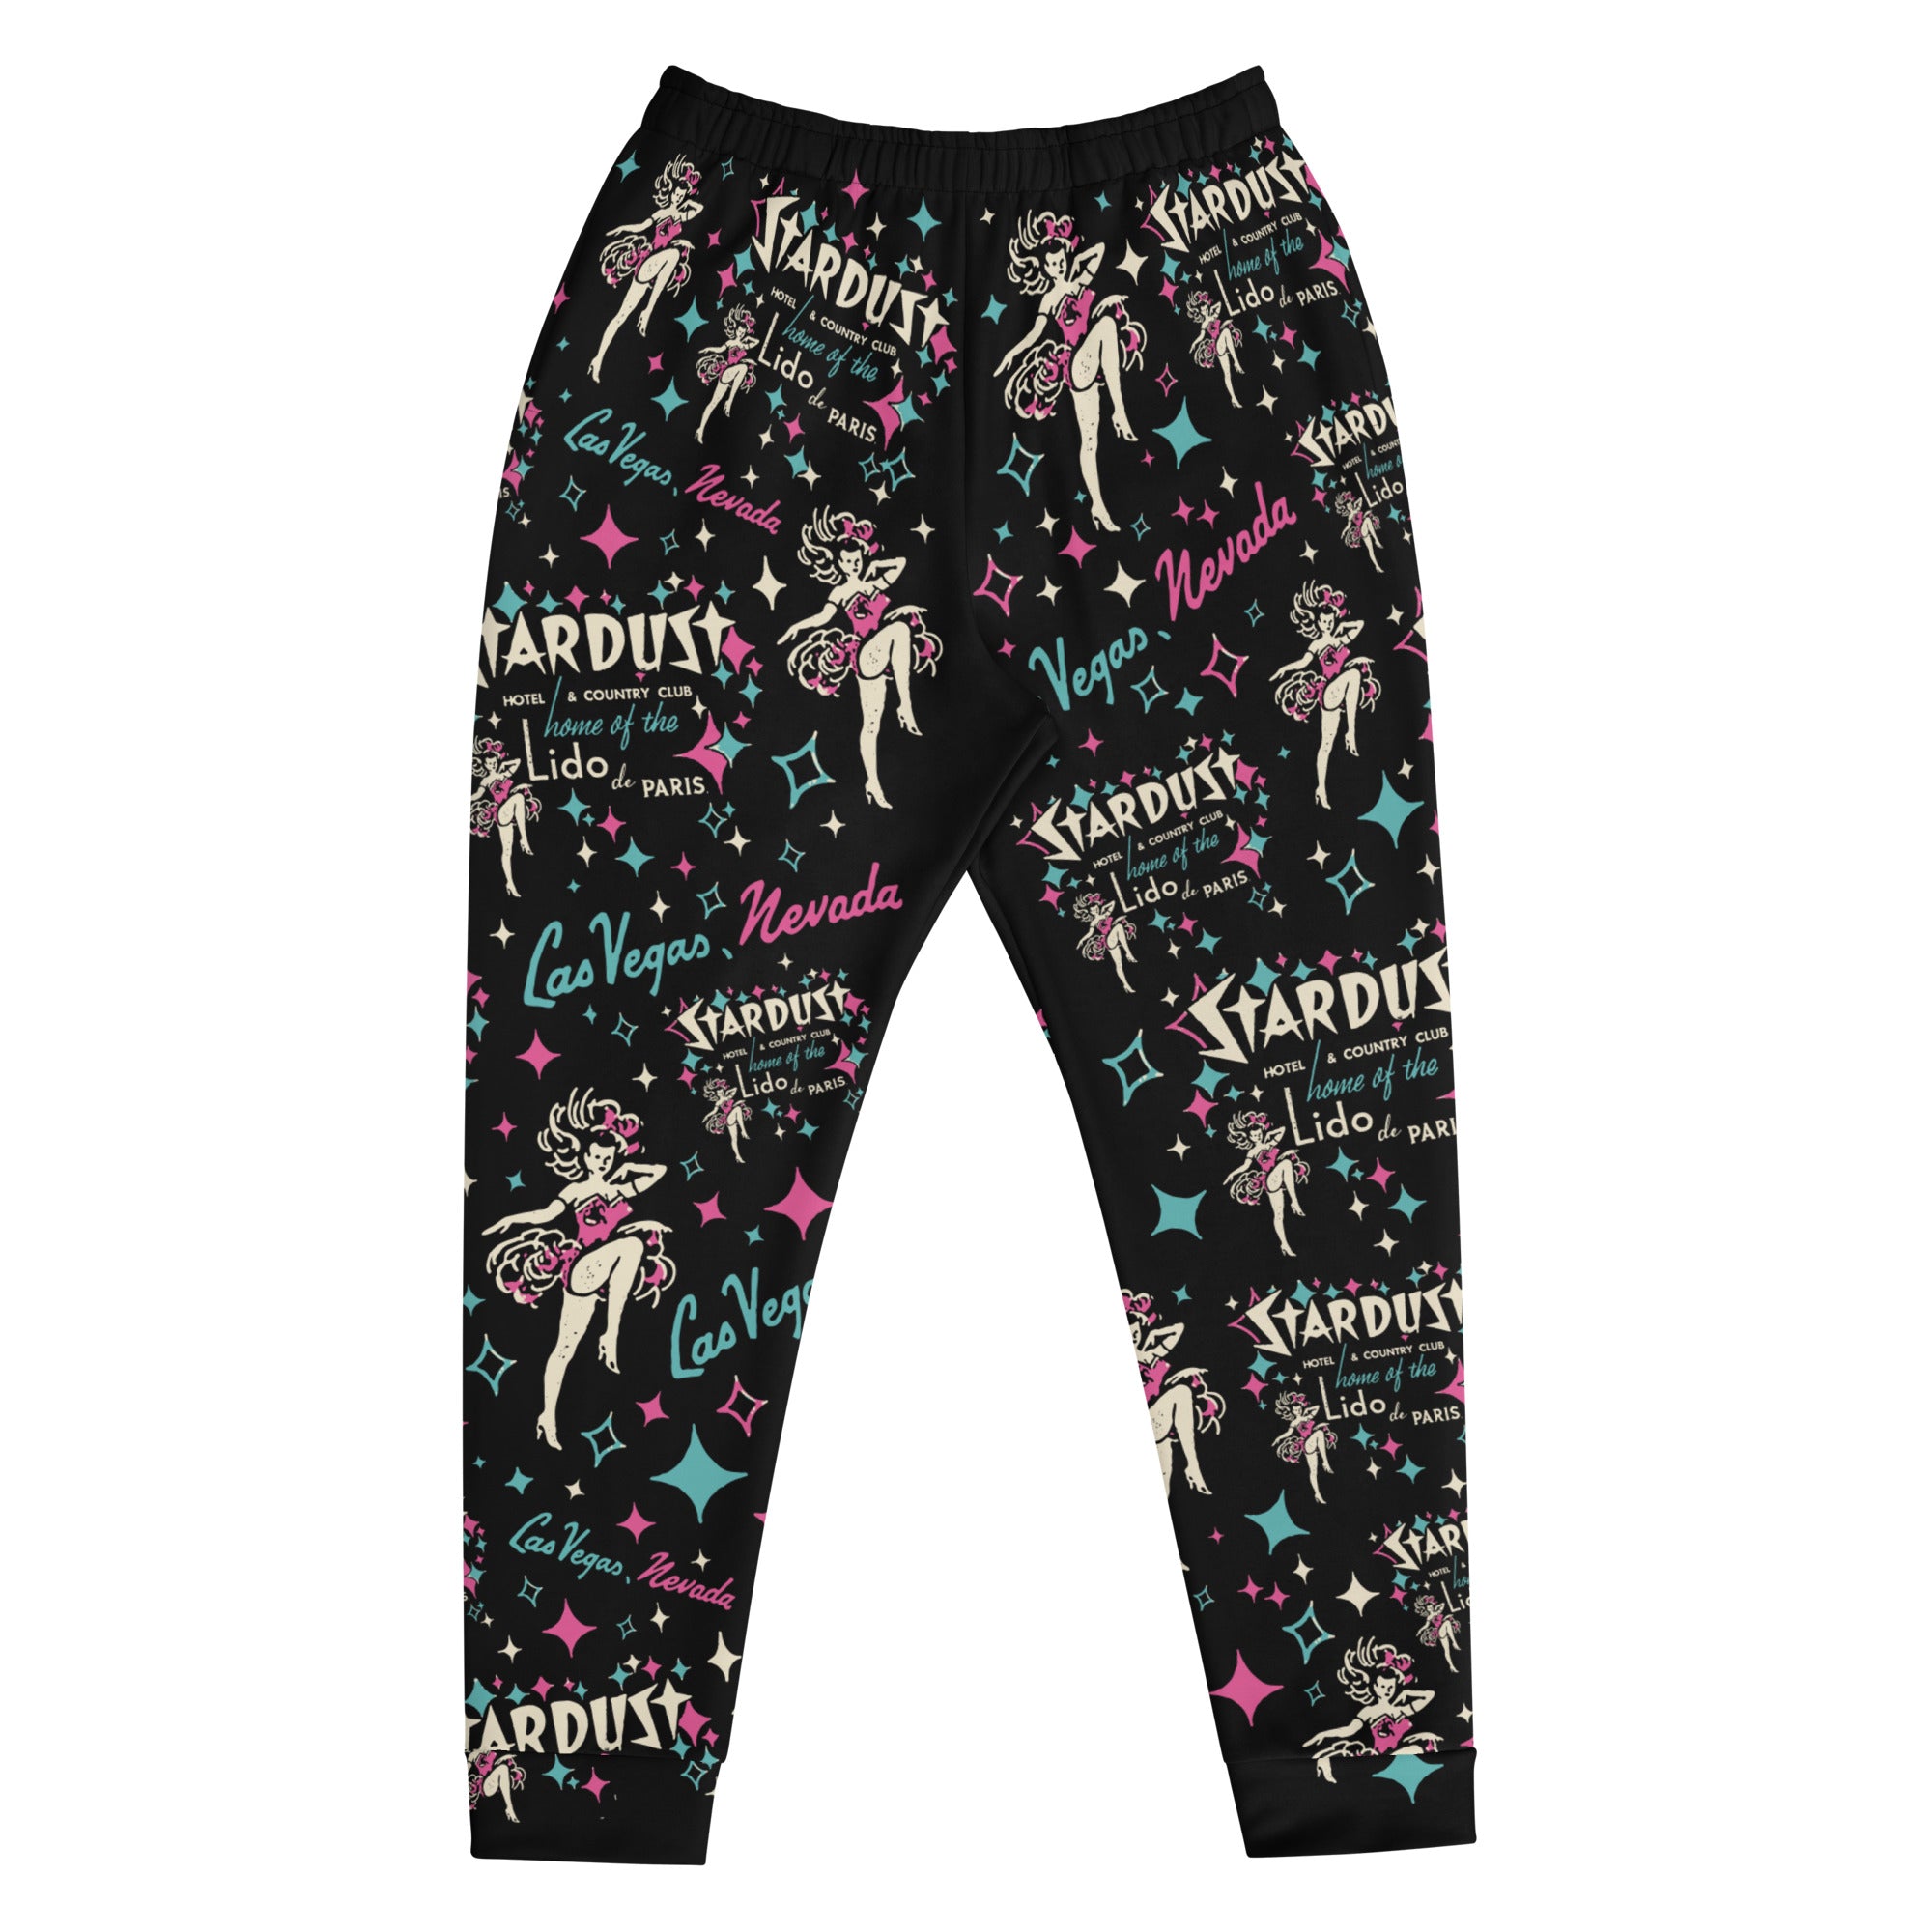 Stardust - Vintage Las Vegas - Pajama Lounge Pants